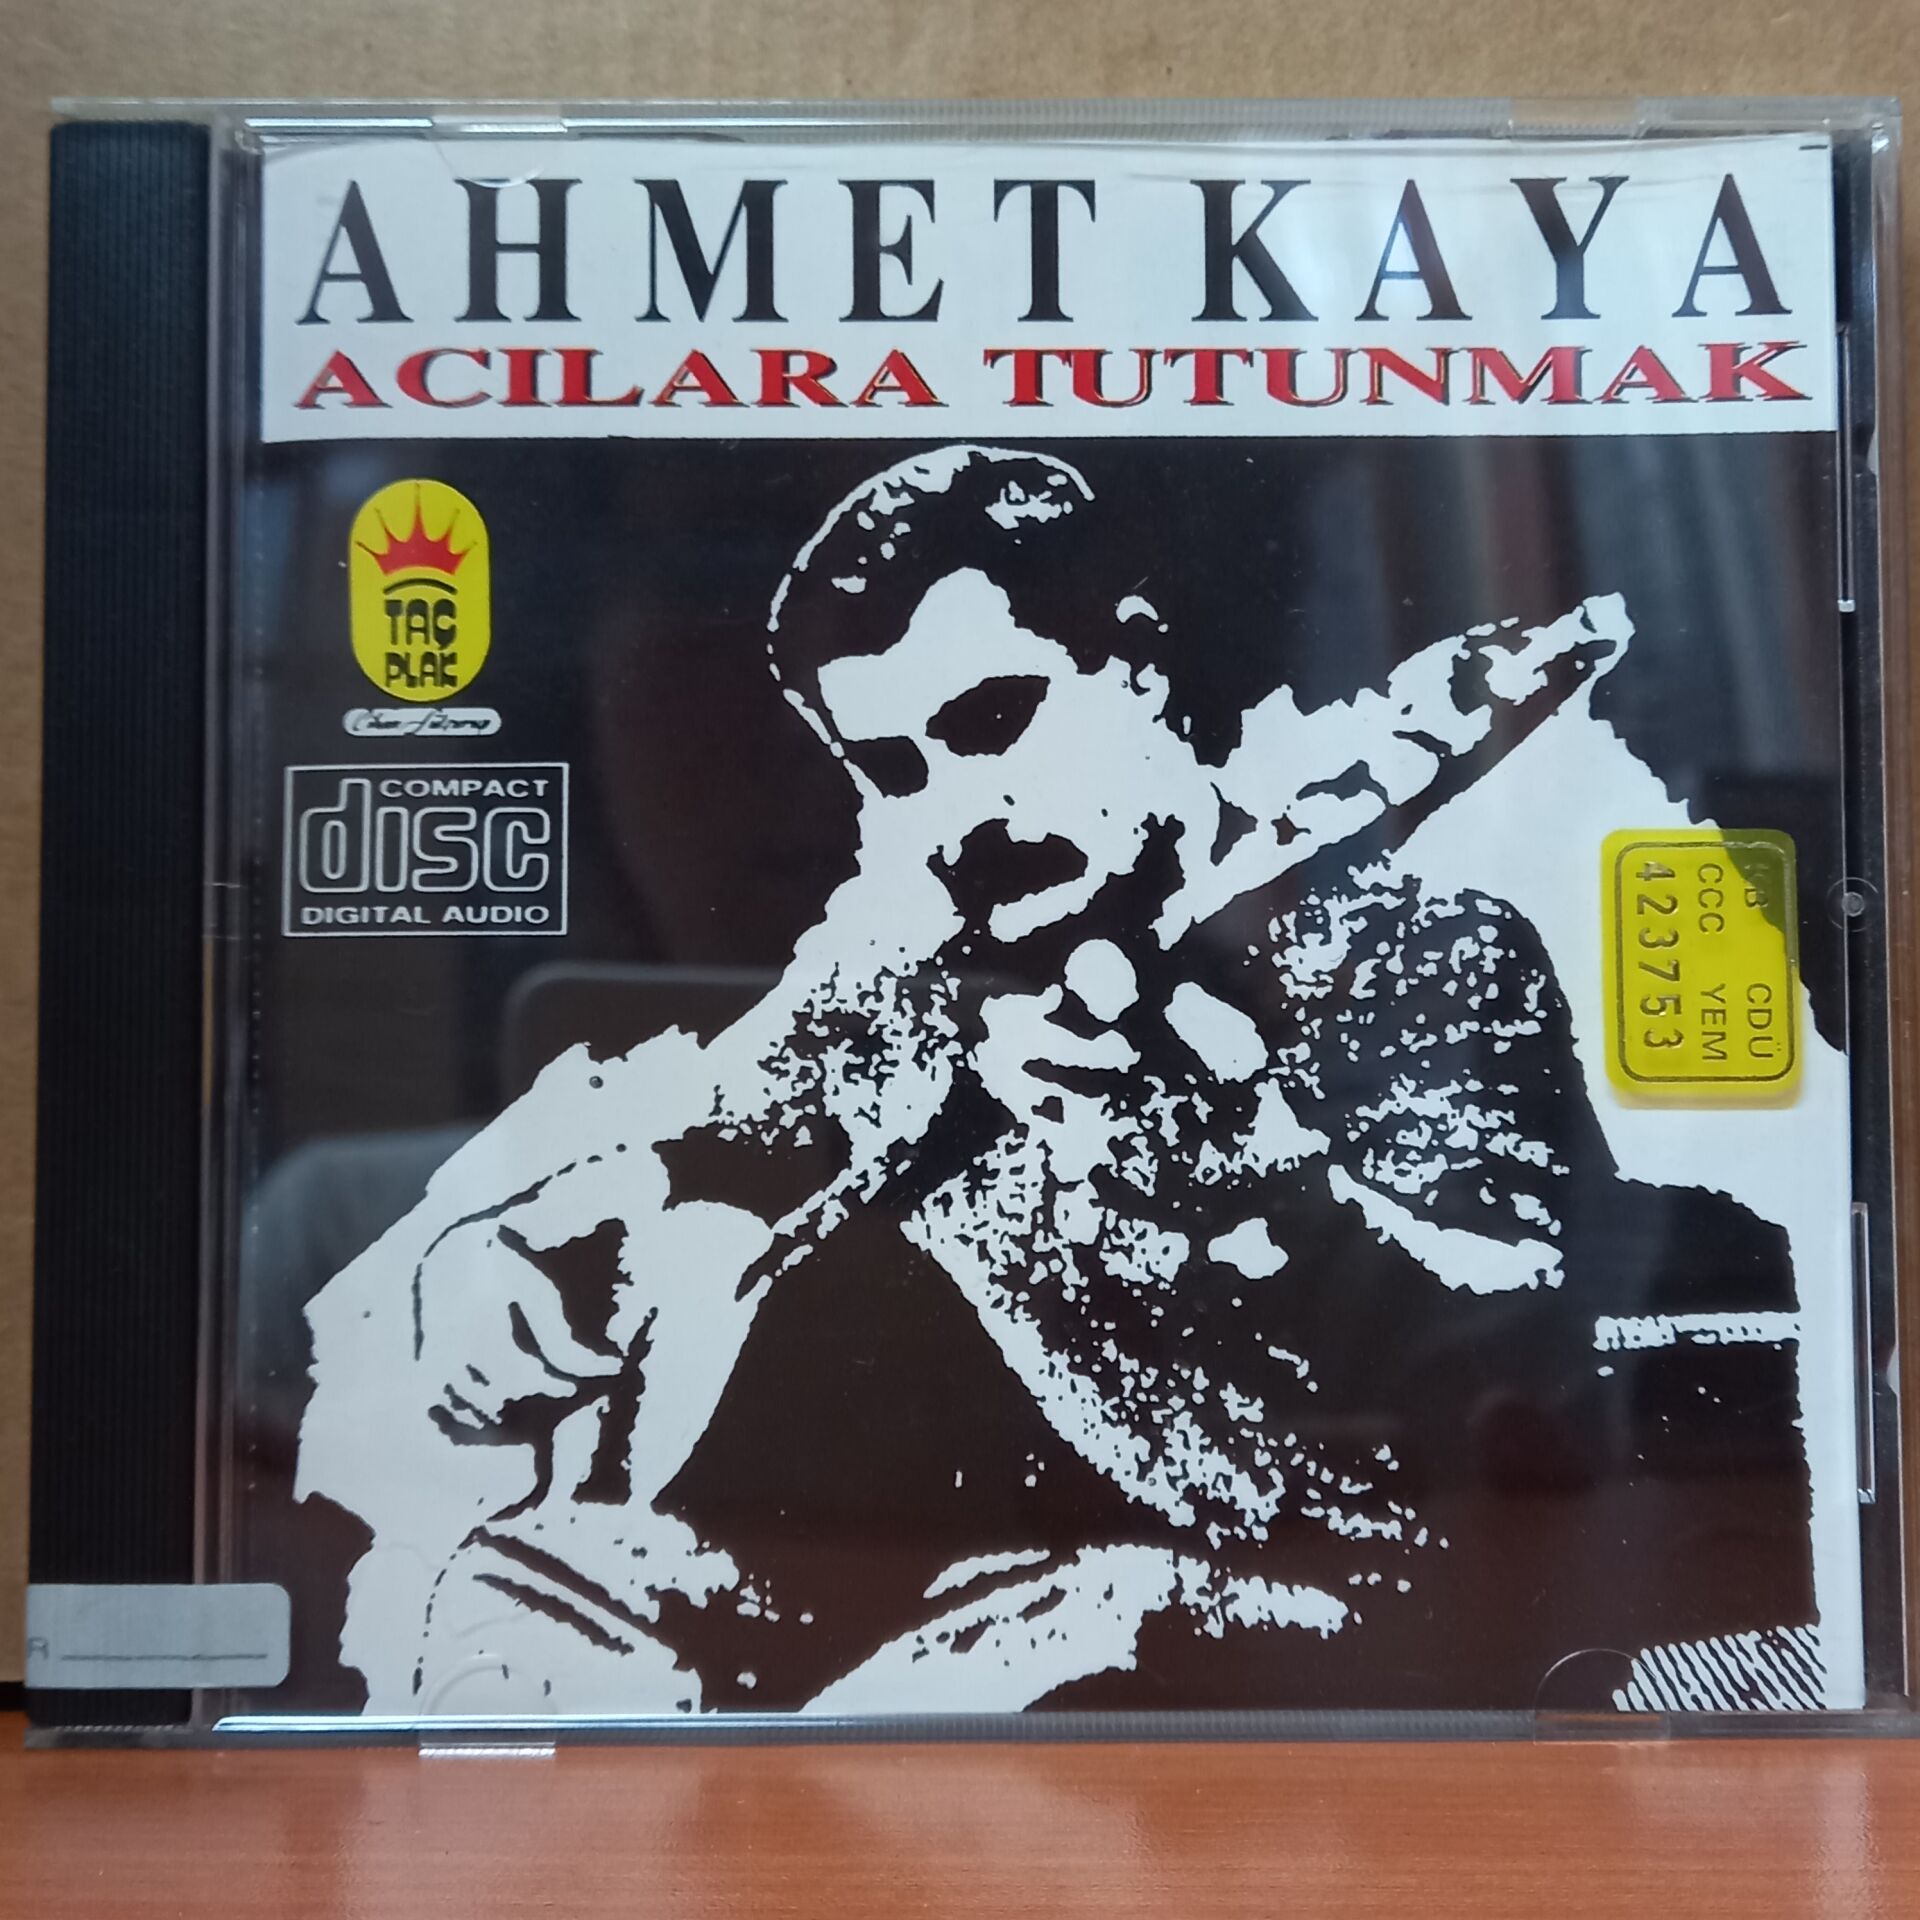 AHMET KAYA - ACILARA TUTUNMAK (1993) - CD 2.EL